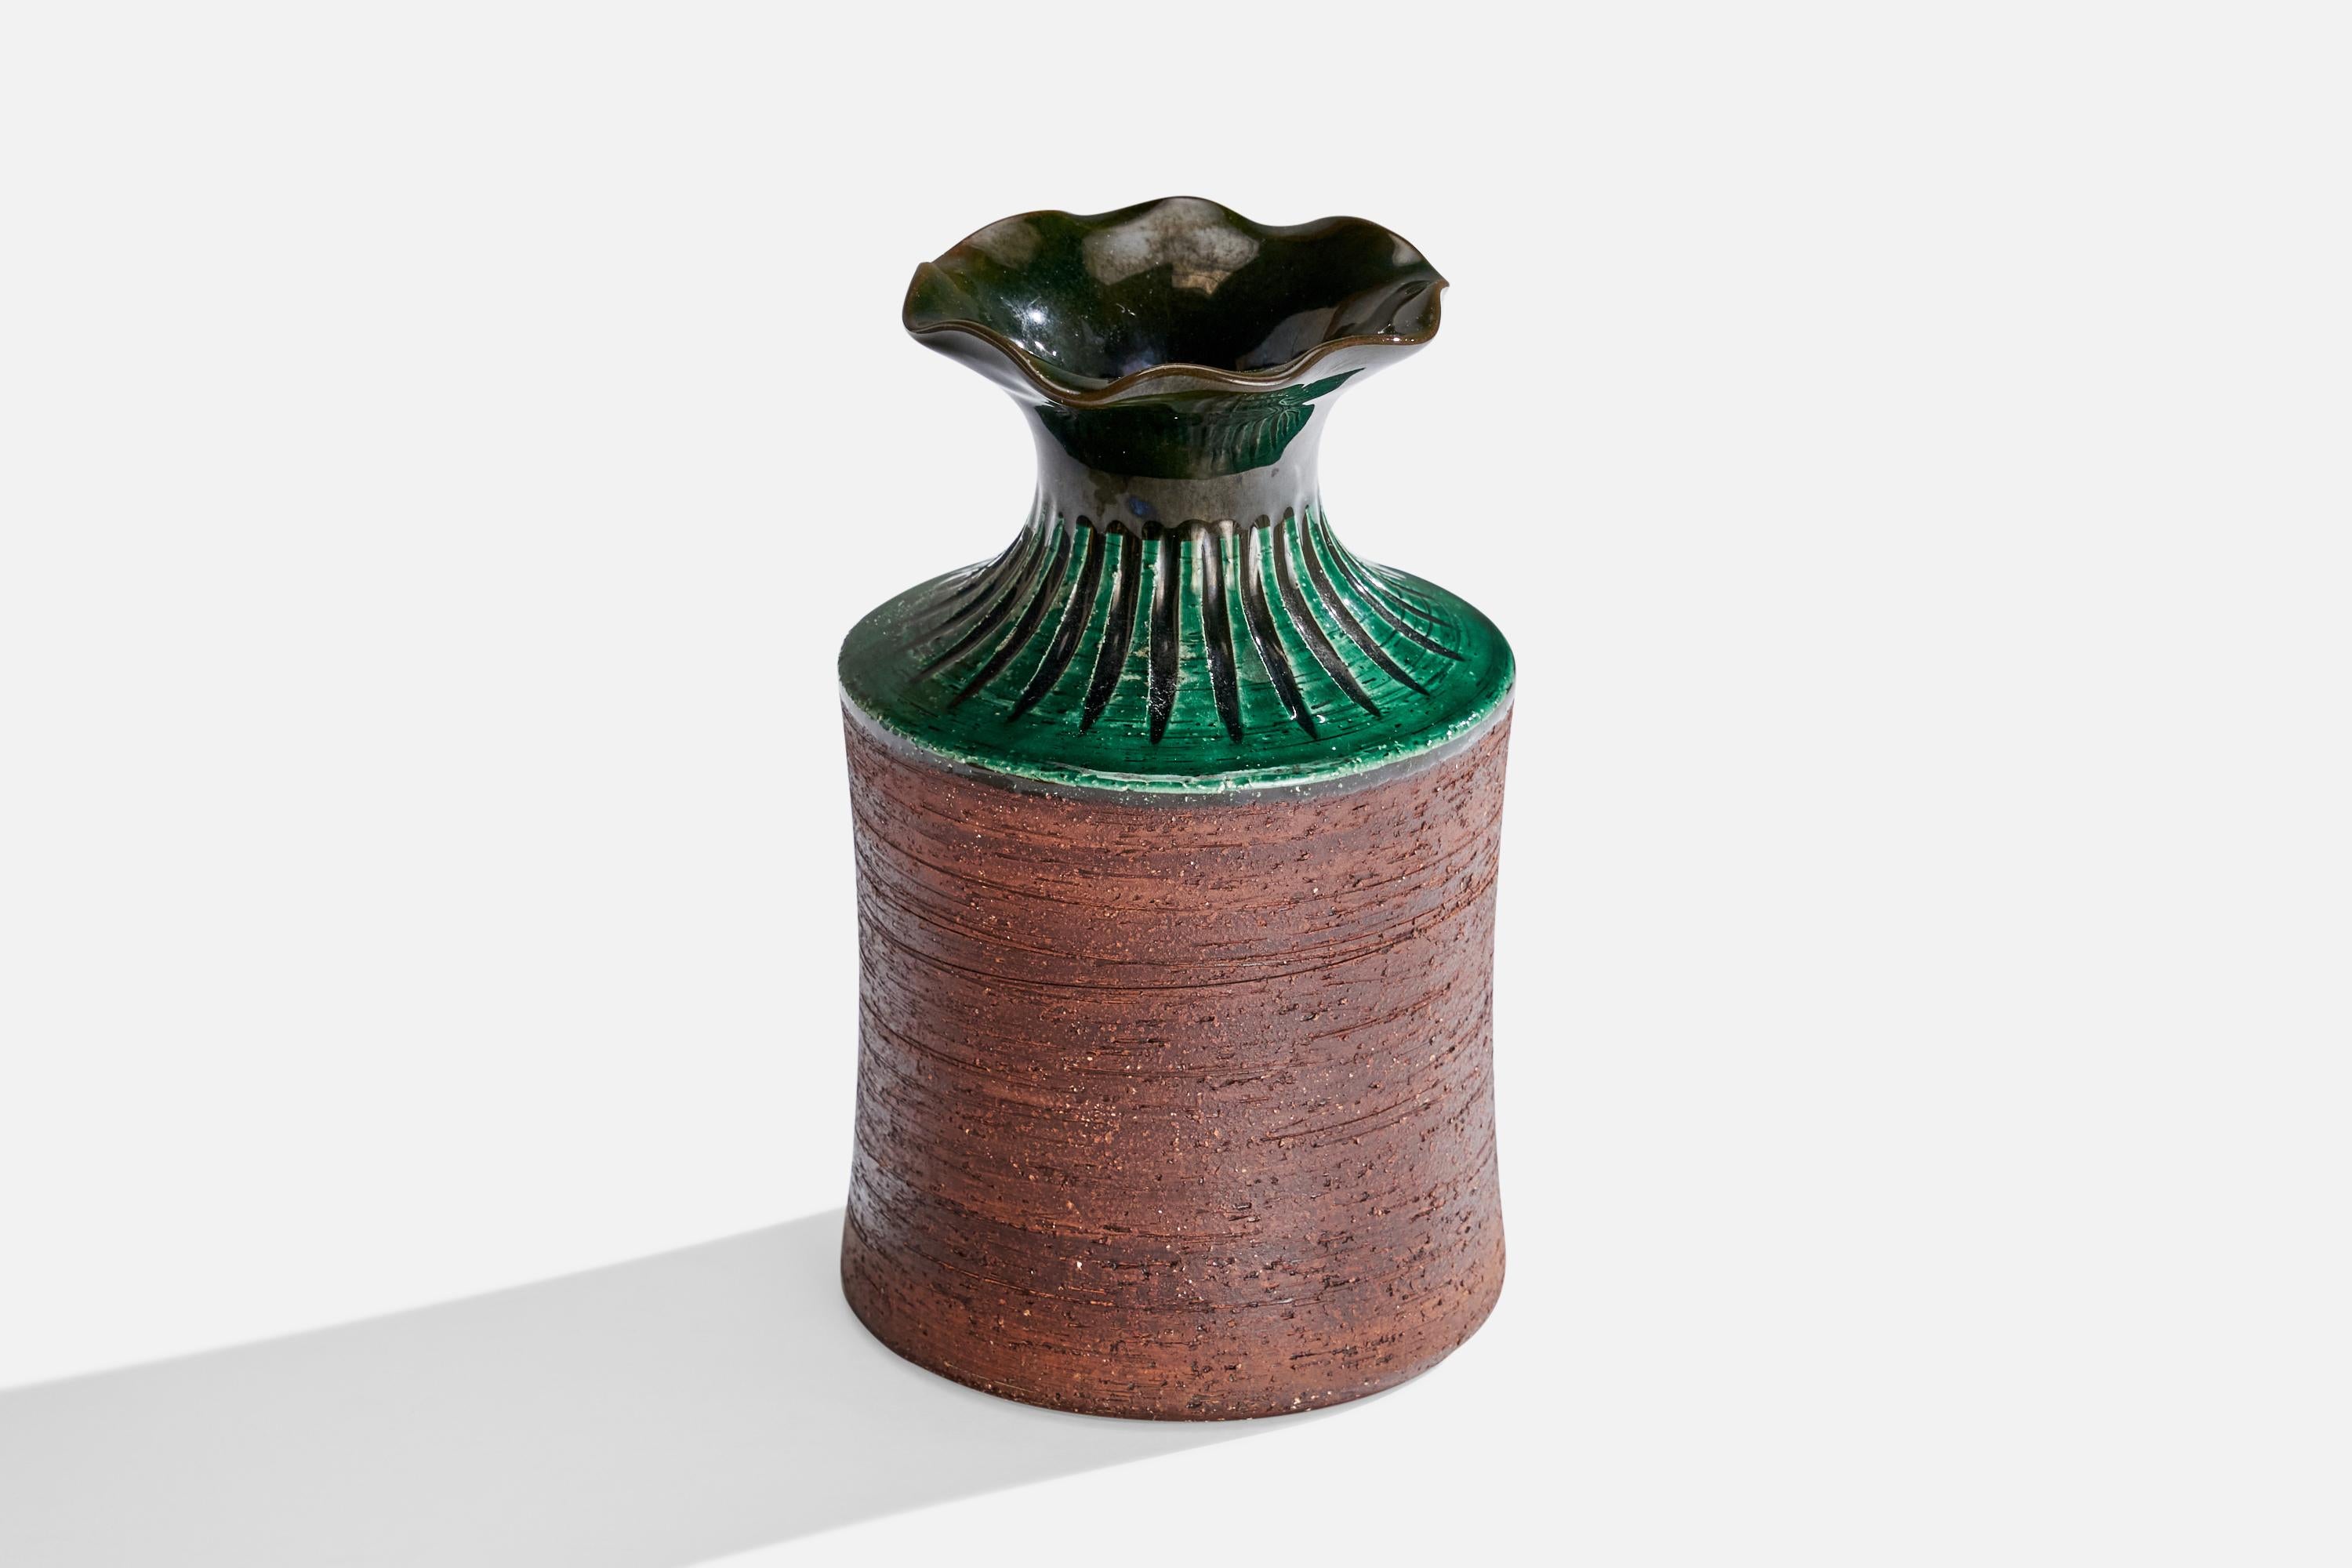 Vase en faïence à glaçure verte et brune conçu et produit par Gabriel Keramik, Suède, c. 1950.